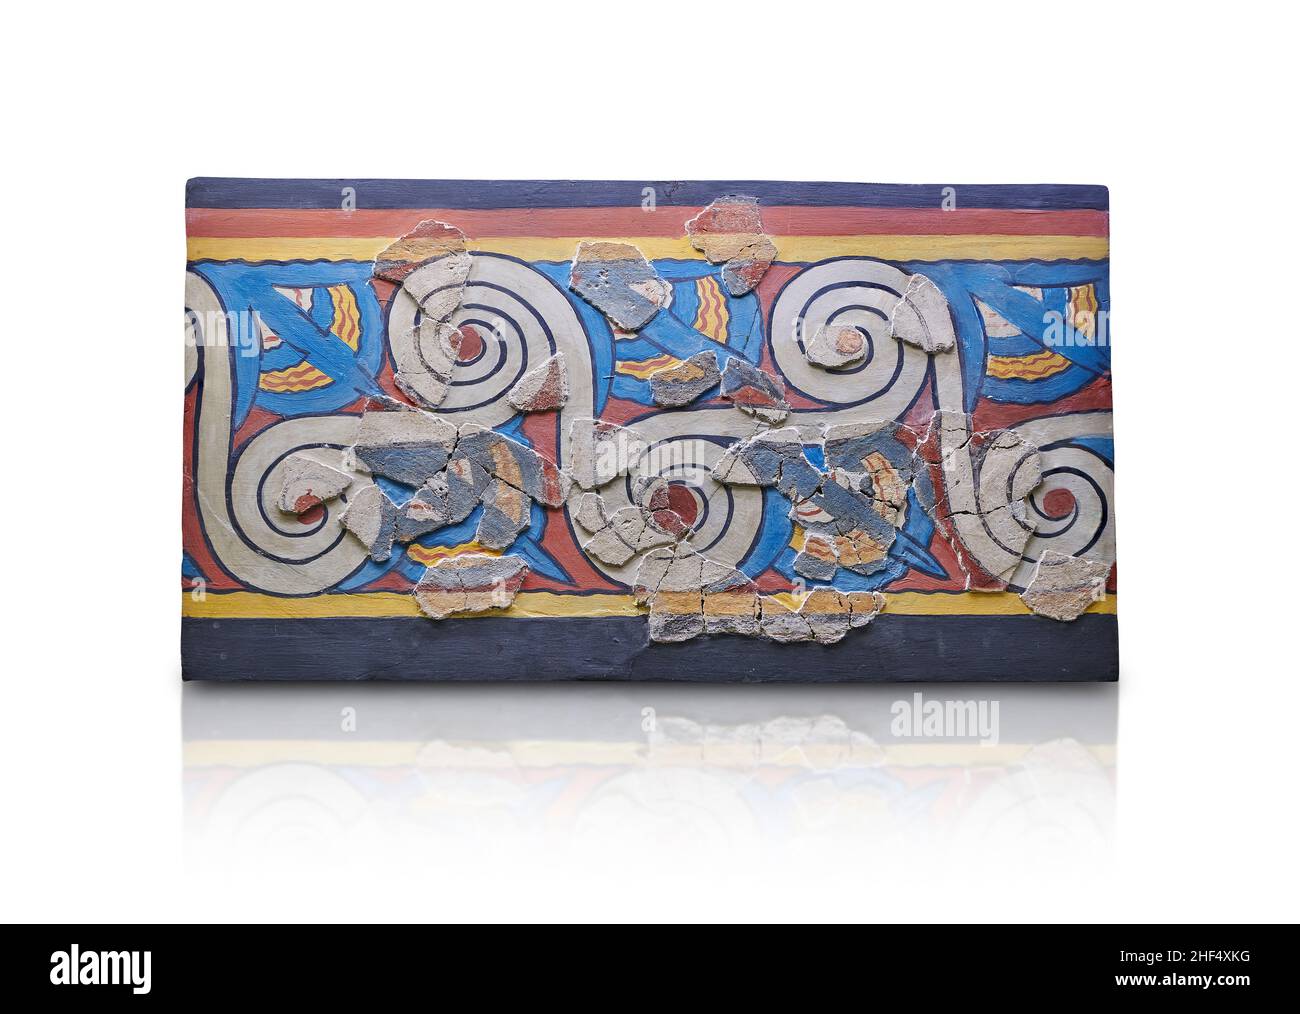 Affresco murale miceneo con spirali running e decorazioni in loto dal Palazzo di Micene, zona pithos, 1500-1400 a.C. Micene. Micene archeologica Foto Stock